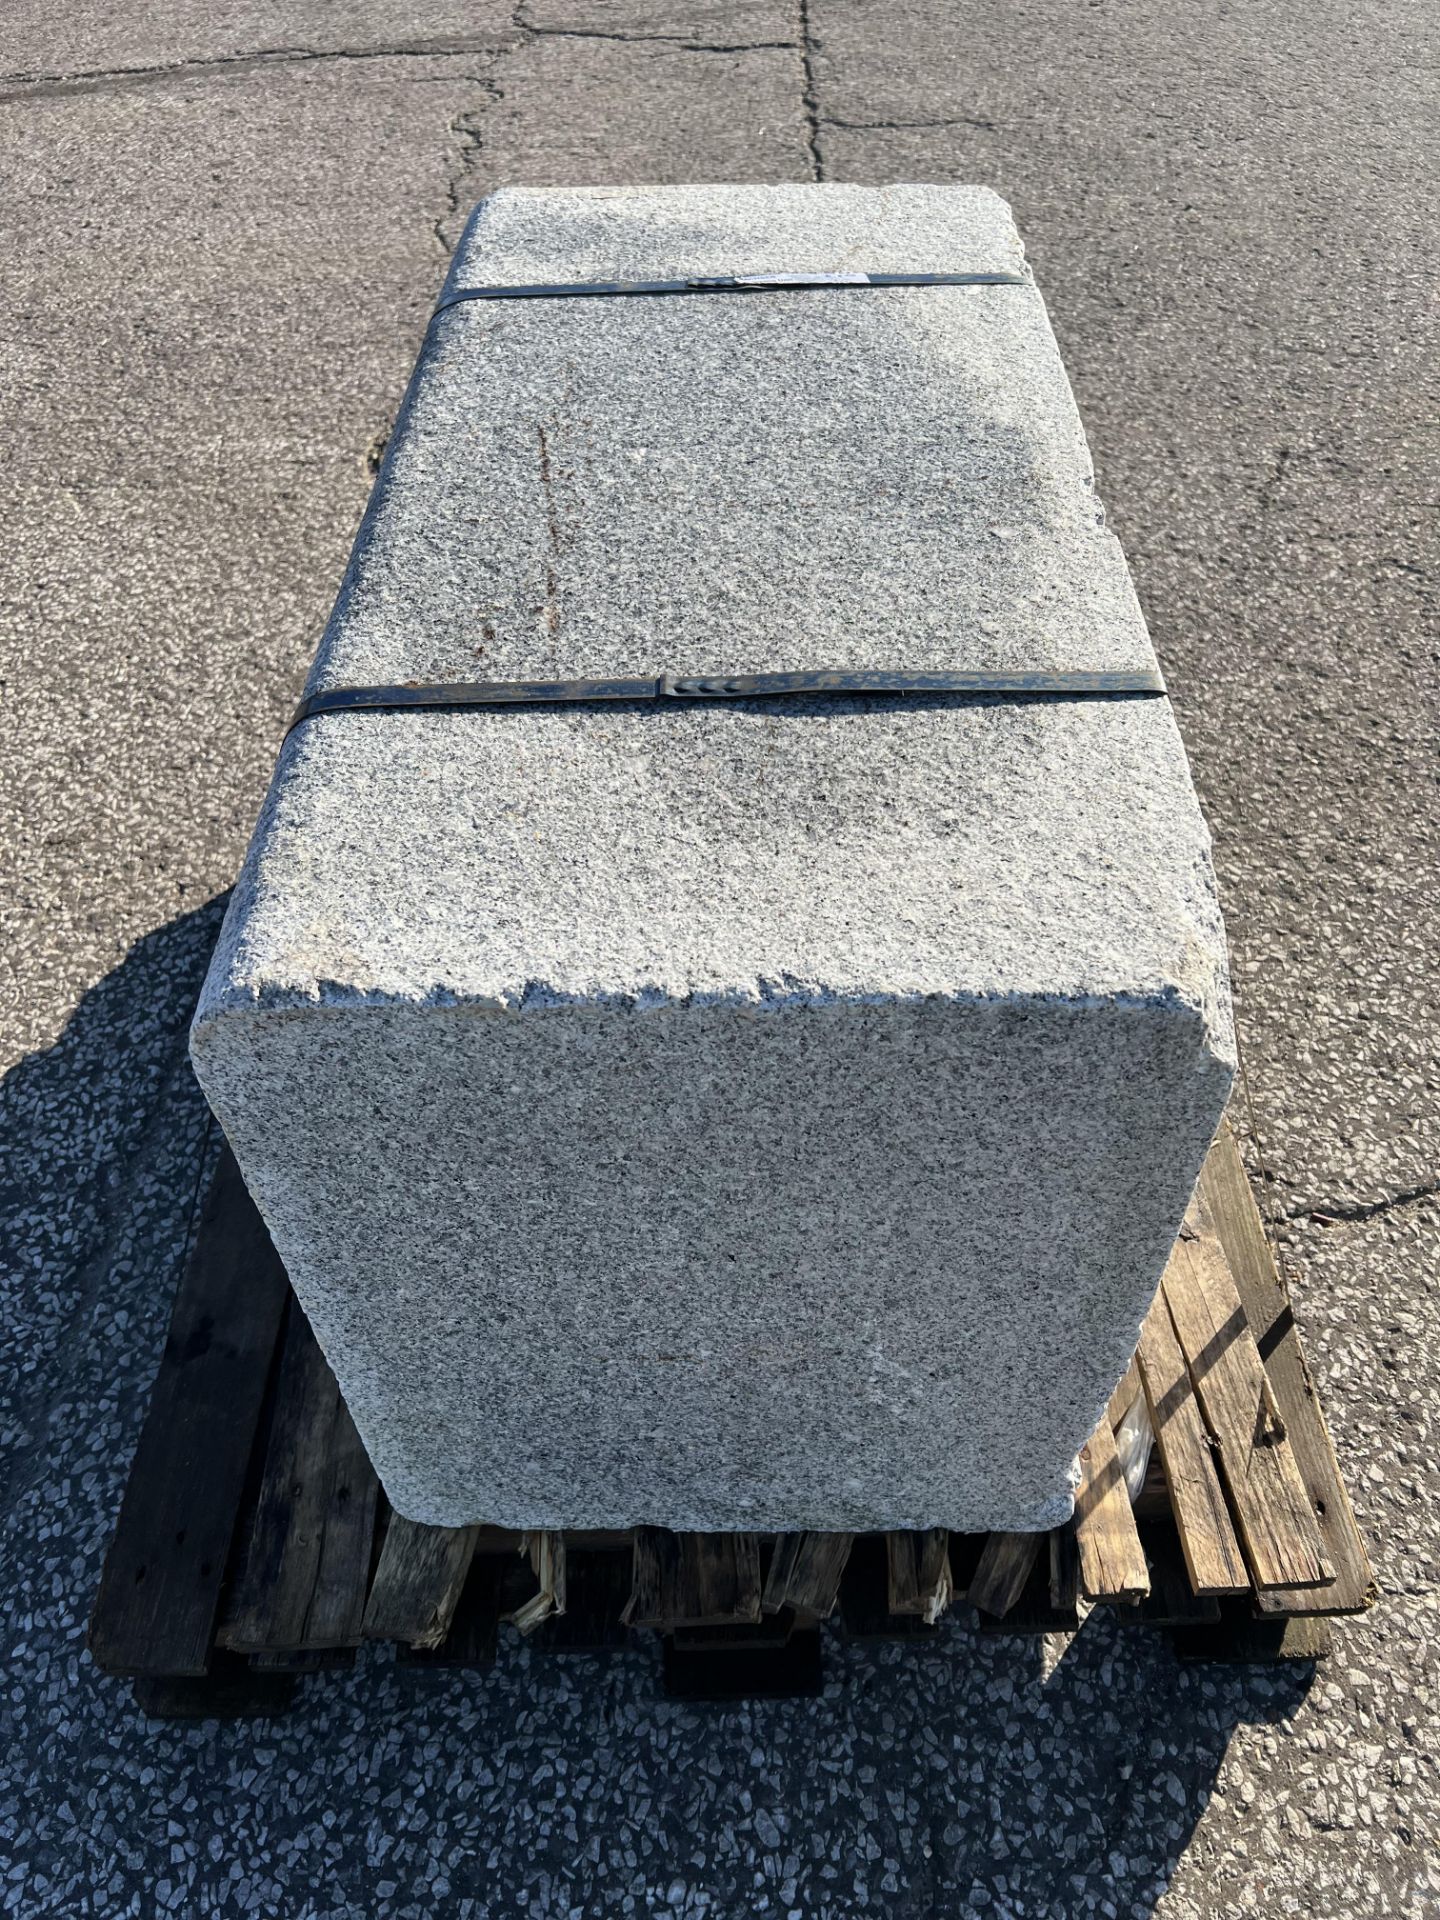 Granite Block 800Kg - Image 4 of 4